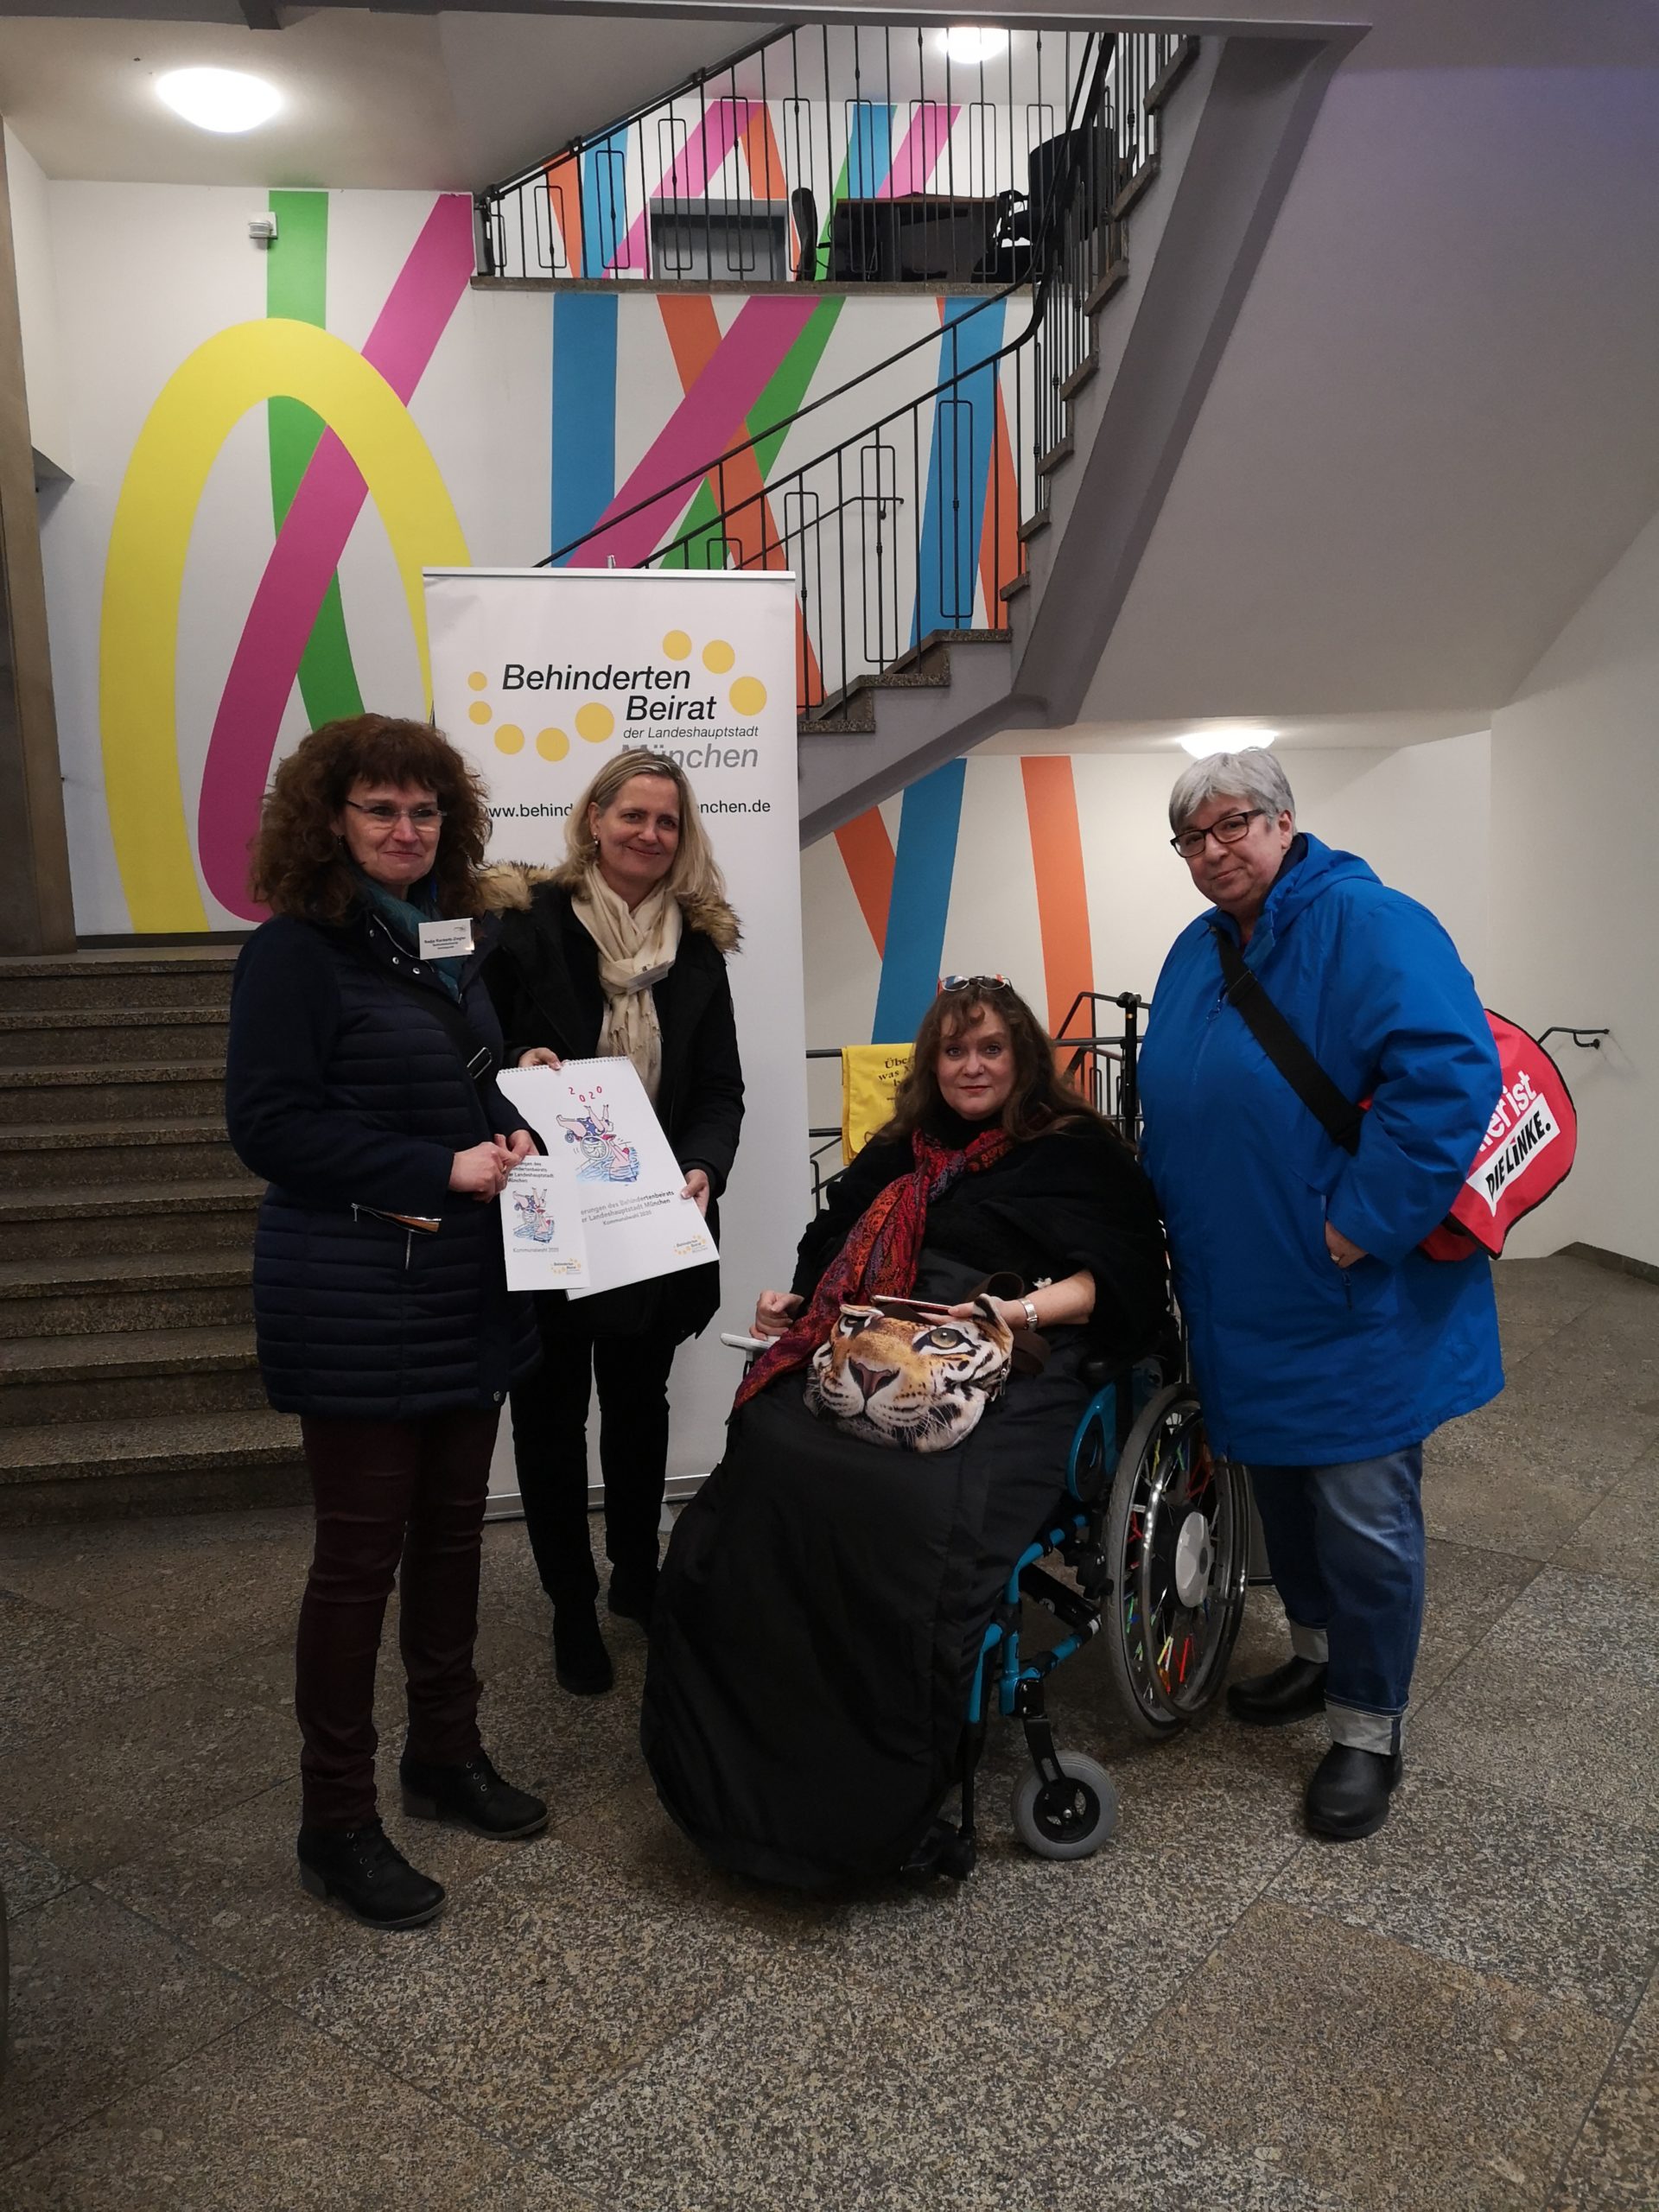 Nadja Rackwitz-Ziegler, Cornelia von Pappenheim, Patricia Koller und Rita Braaz bei dem Treffen vom Behindertenbeirat München